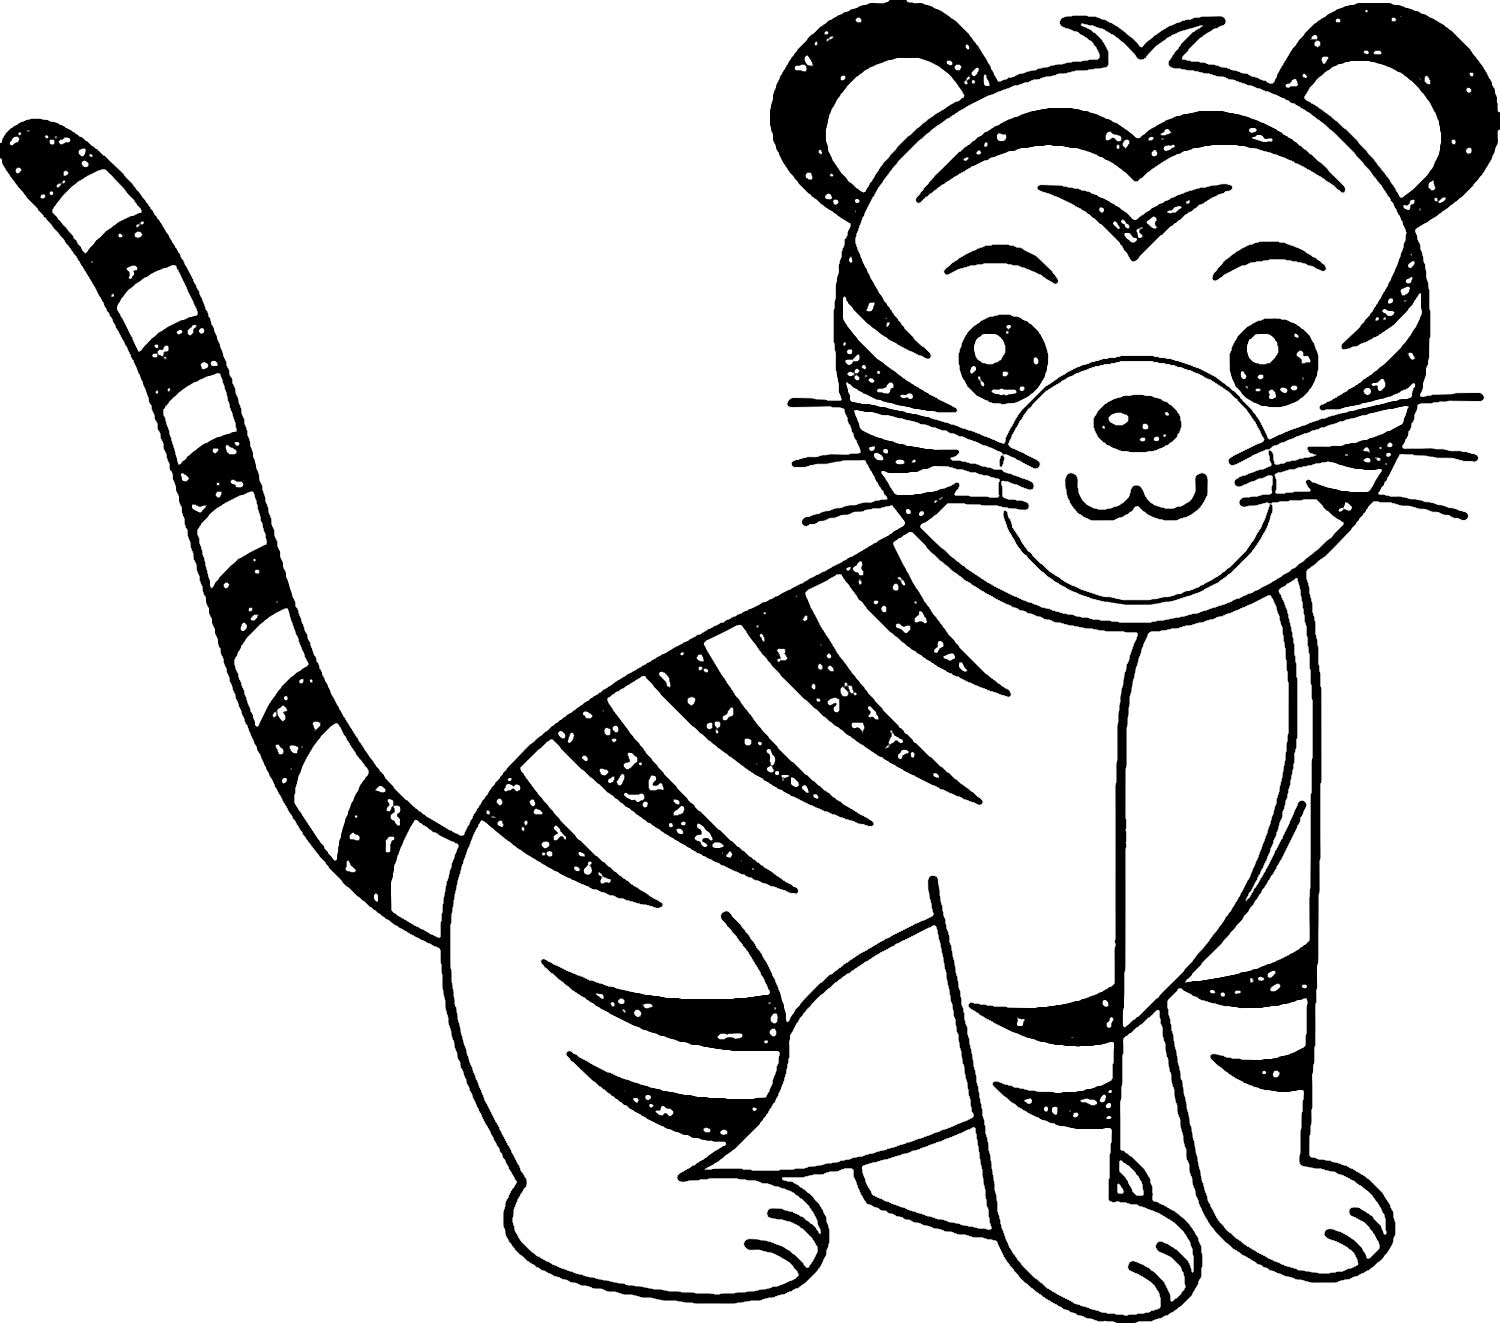 Ảnh vẽ con hổ: Mời bạn đến với bức ảnh vẽ con hổ tuyệt đẹp, nơi những nét vẽ tỉ mỉ và sắc nét cho thấy tình yêu và sự tôn trọng với loài vật này.